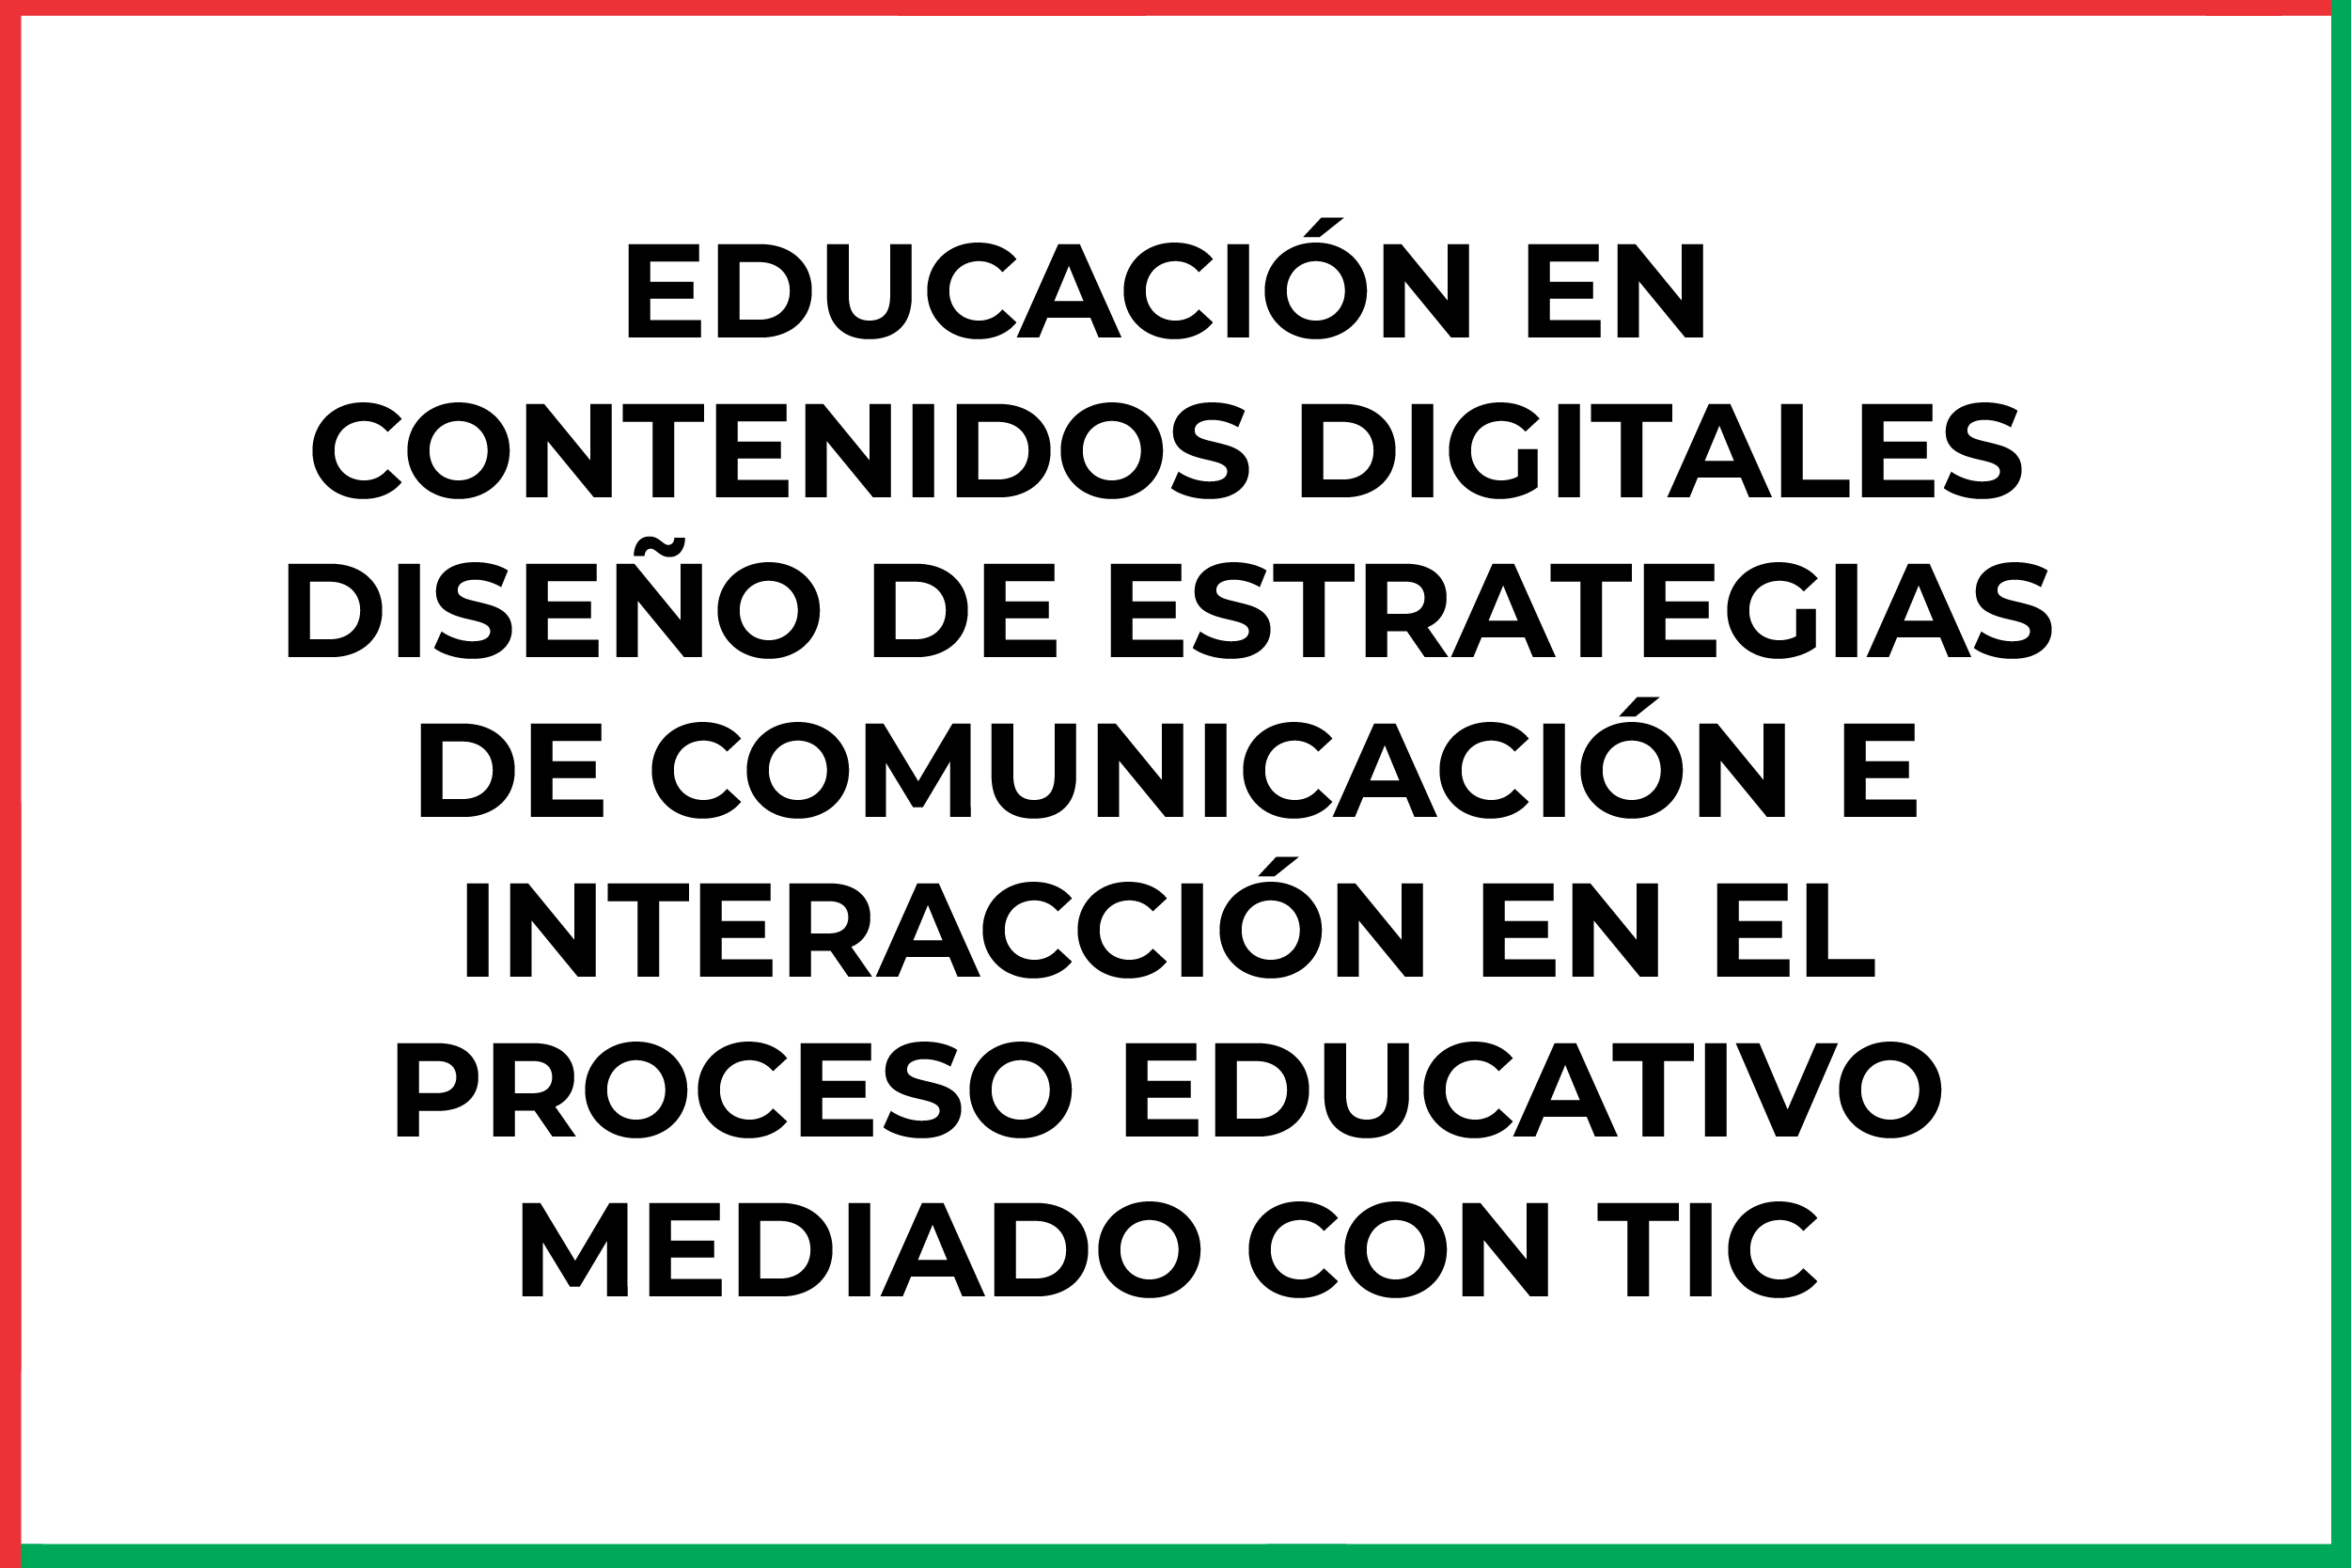 ELECTIVA I: EDUCACIÓN EN CONTENIDOS DIGITALES DISEÑO DE ESTRATEGIAS DE COMUNICACIÓN E INTERACCIÓN EN EL PROCESO EDUCATIVO MEDIADO CON TIC